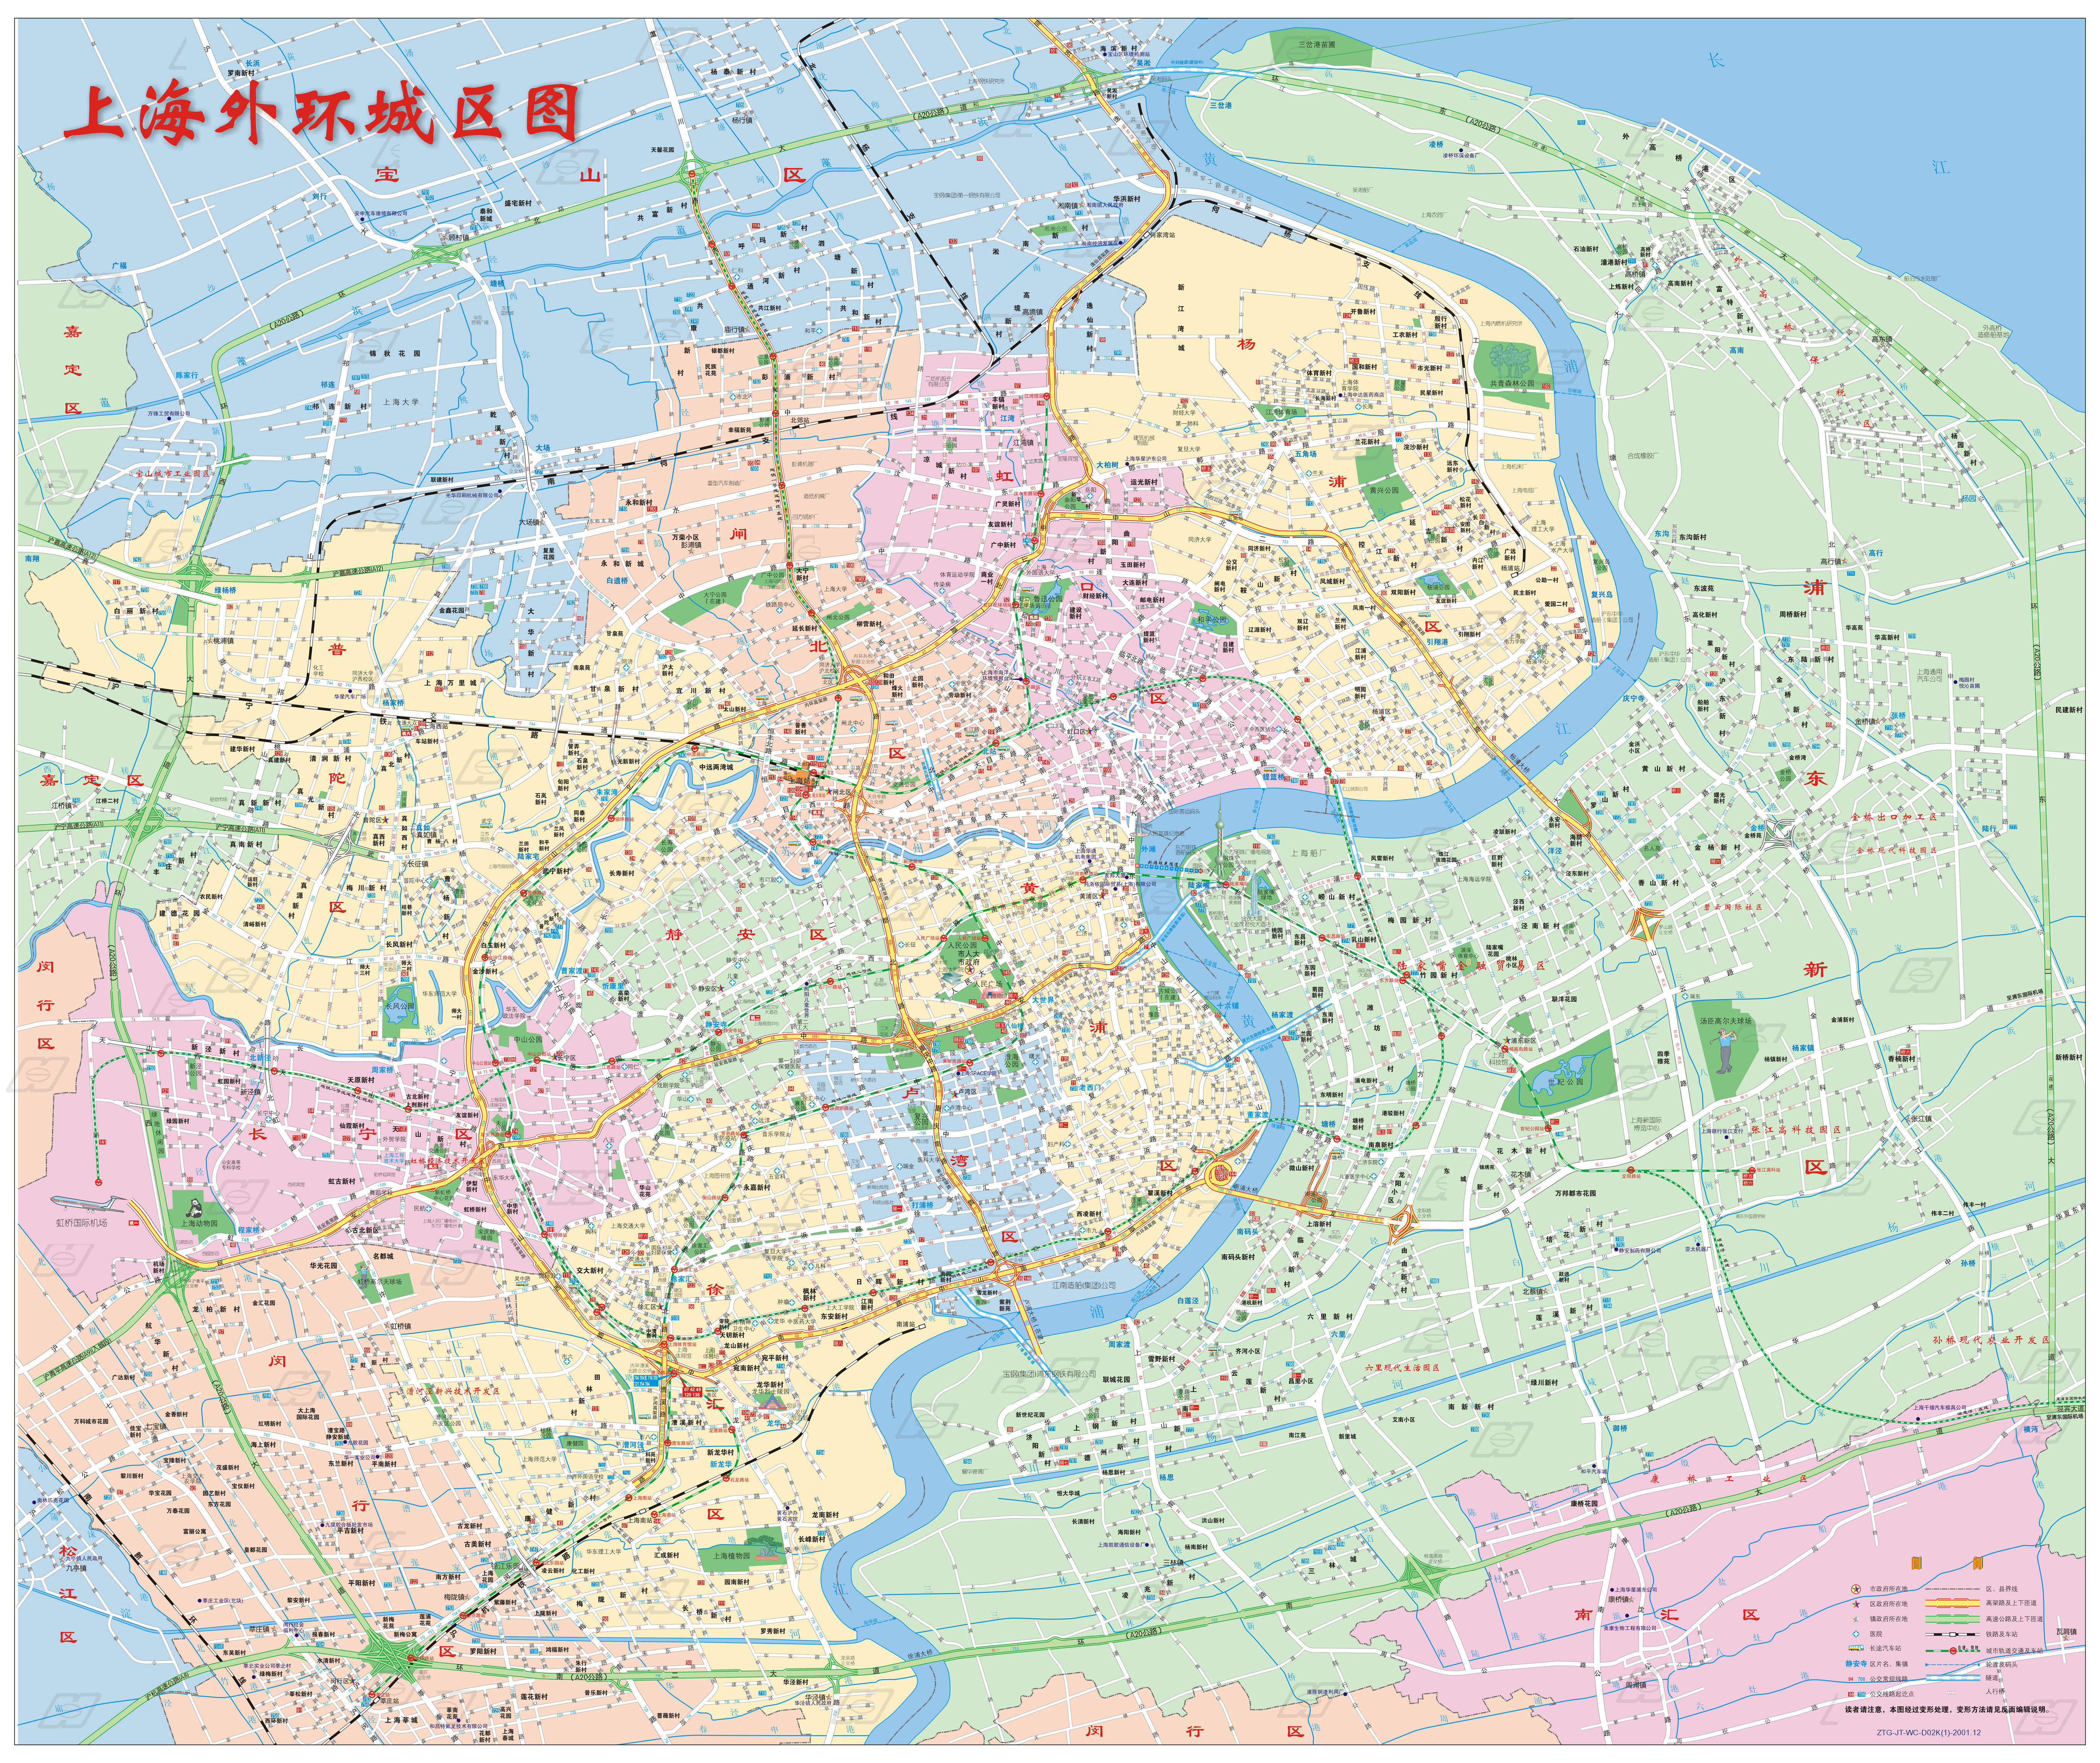 上海地区,外环城区图,中心城区图